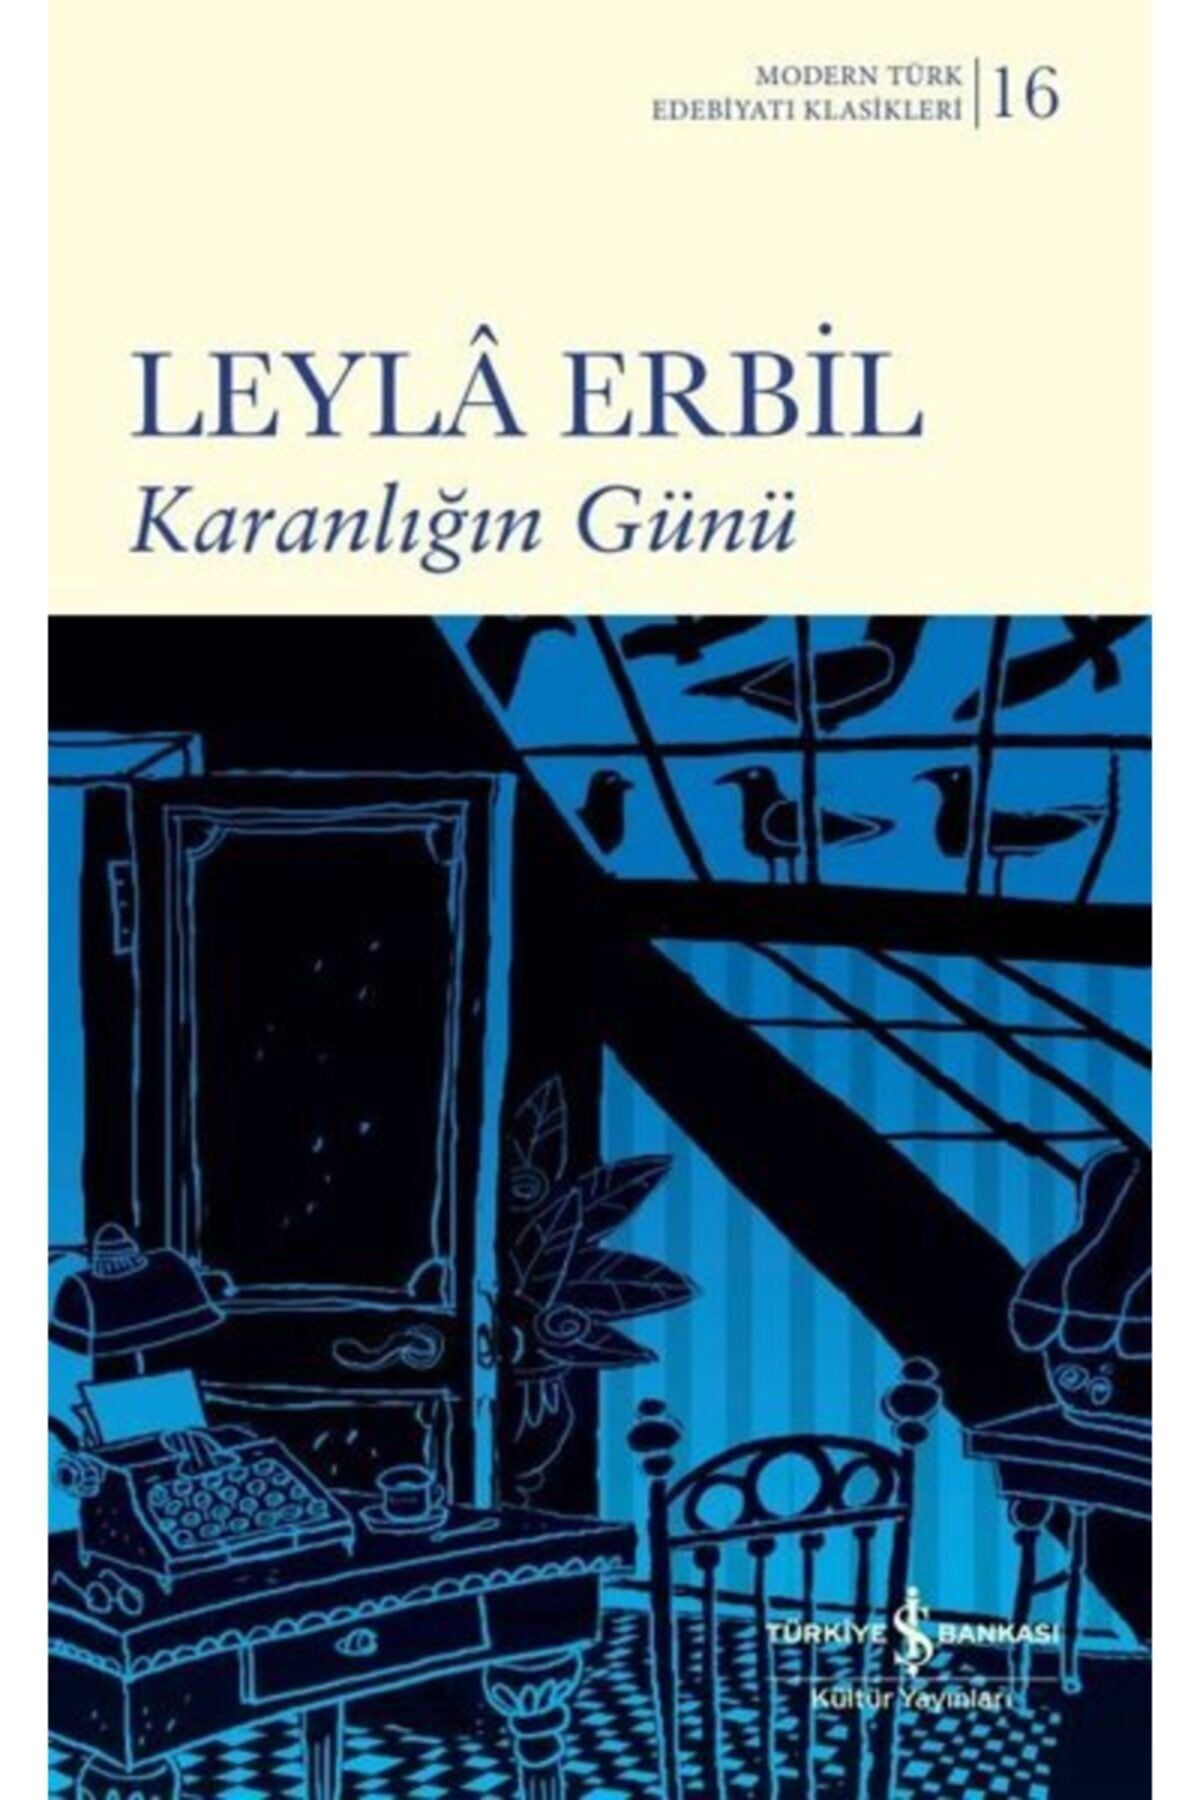 Türkiye İş Bankası Kültür Yayınları Karanlığın Günü - Modern Türk Edebiyatı Klasikleri